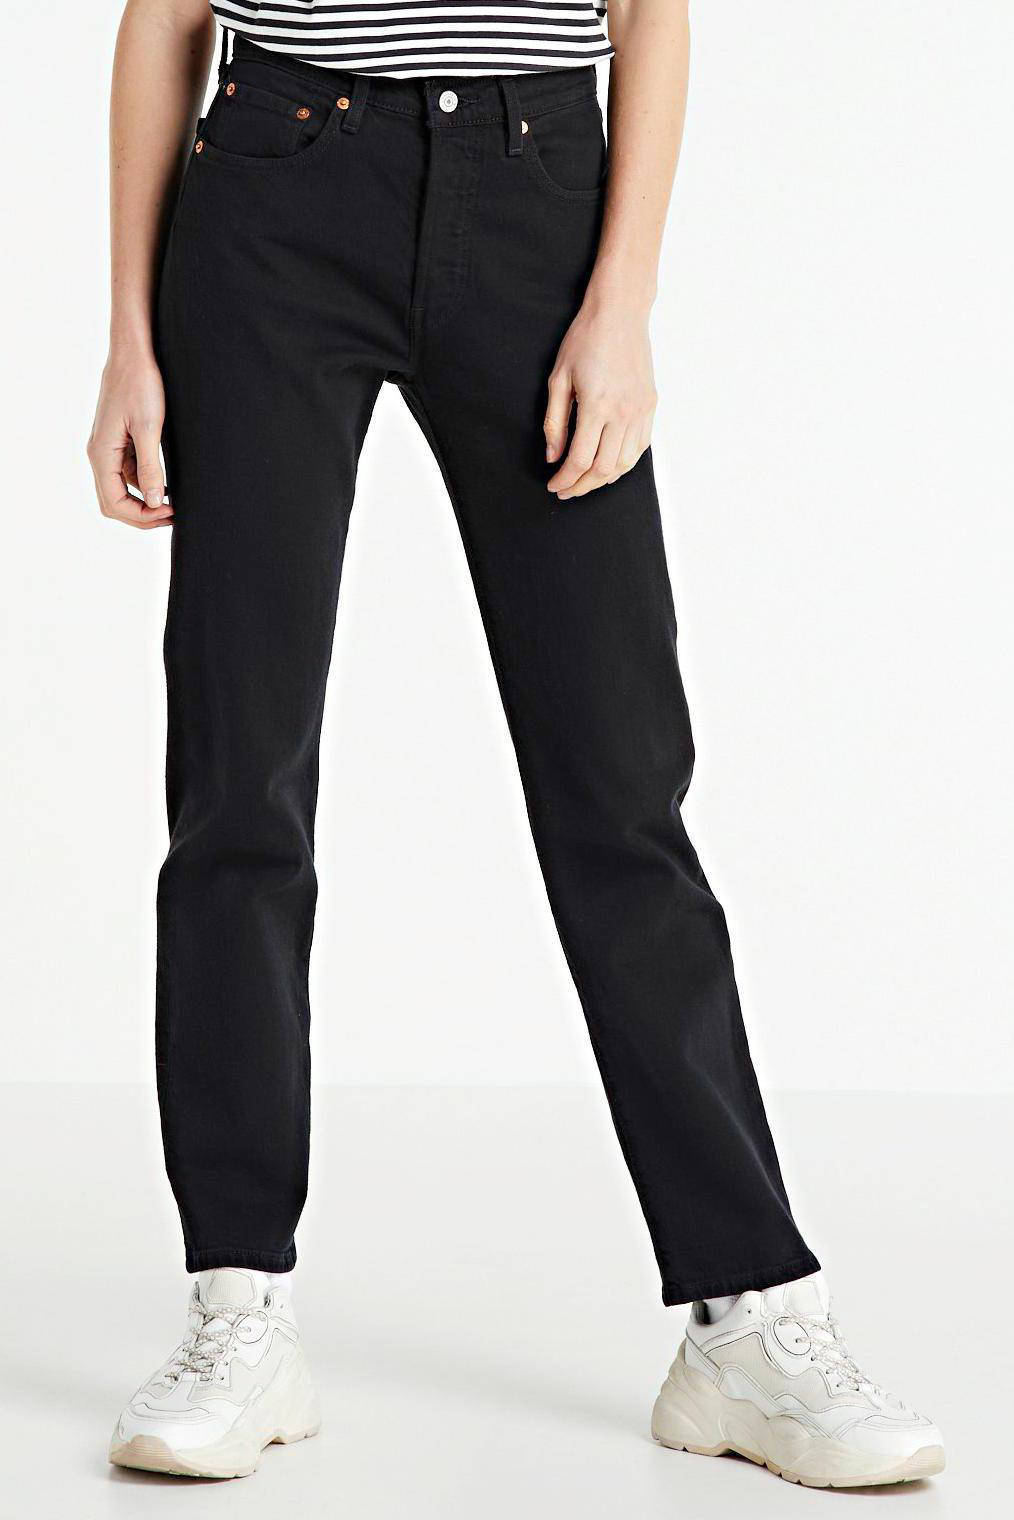 black levis jeans